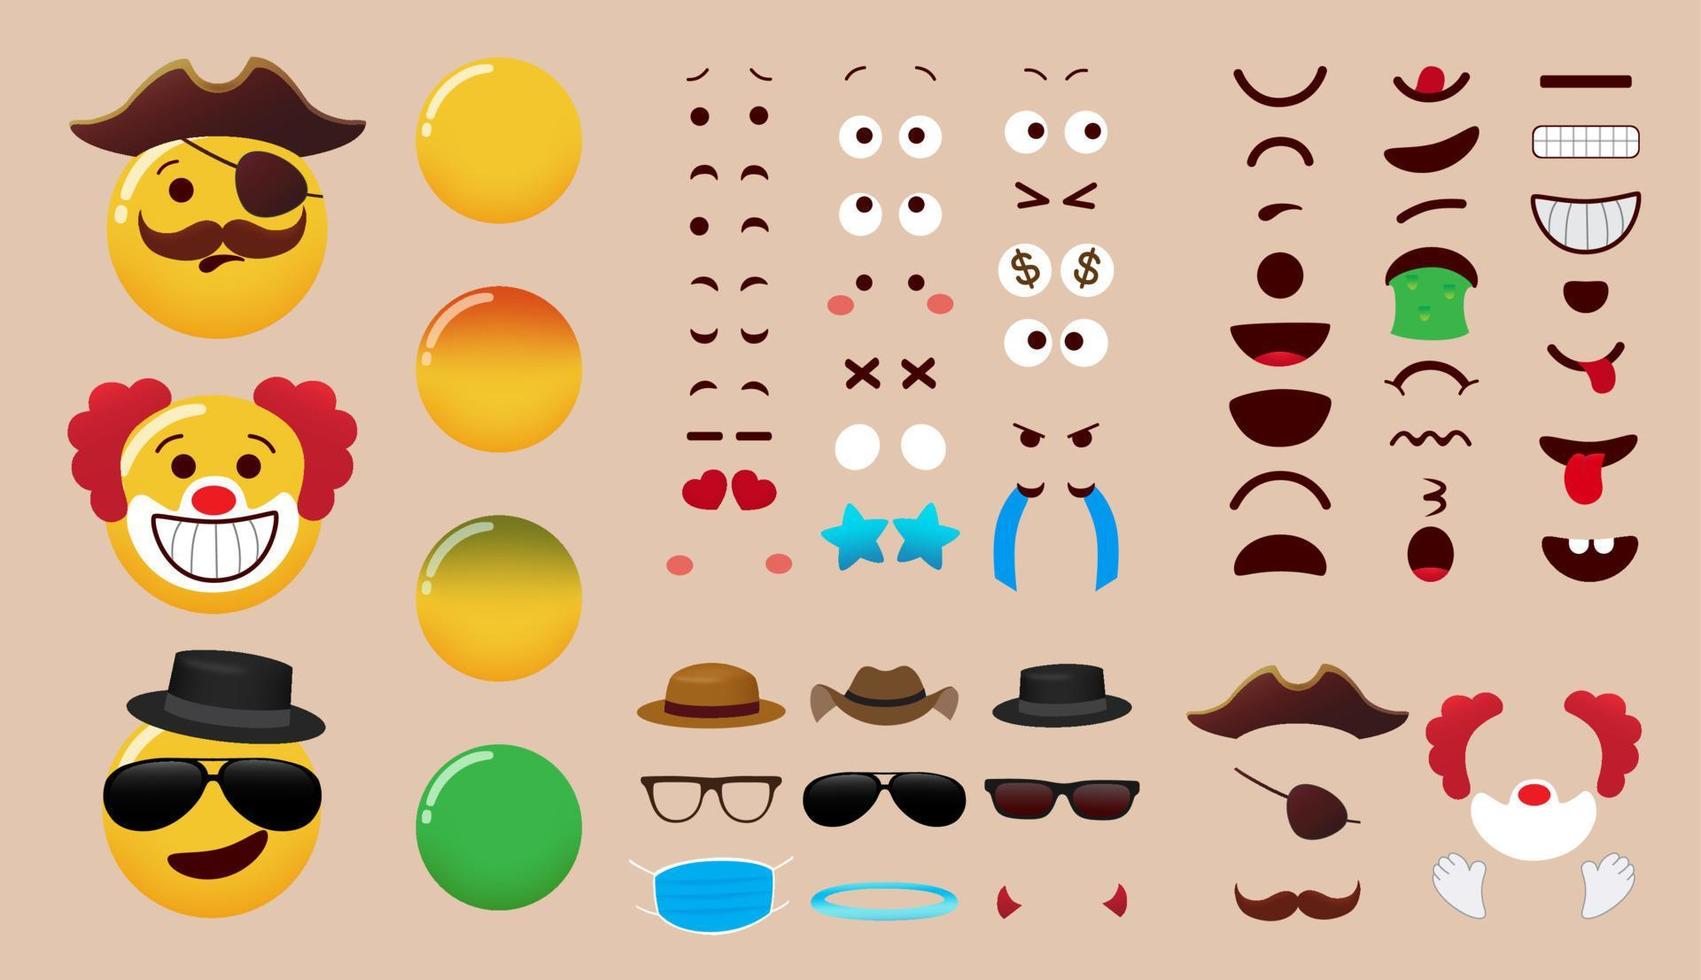 emoji schepper vector decorontwerp. emoticon karakter kit met ogen, mond en kostuum bewerkbare elementen voor emoji's gezichtsuitdrukking onderdelen collectie. vectorillustratie.